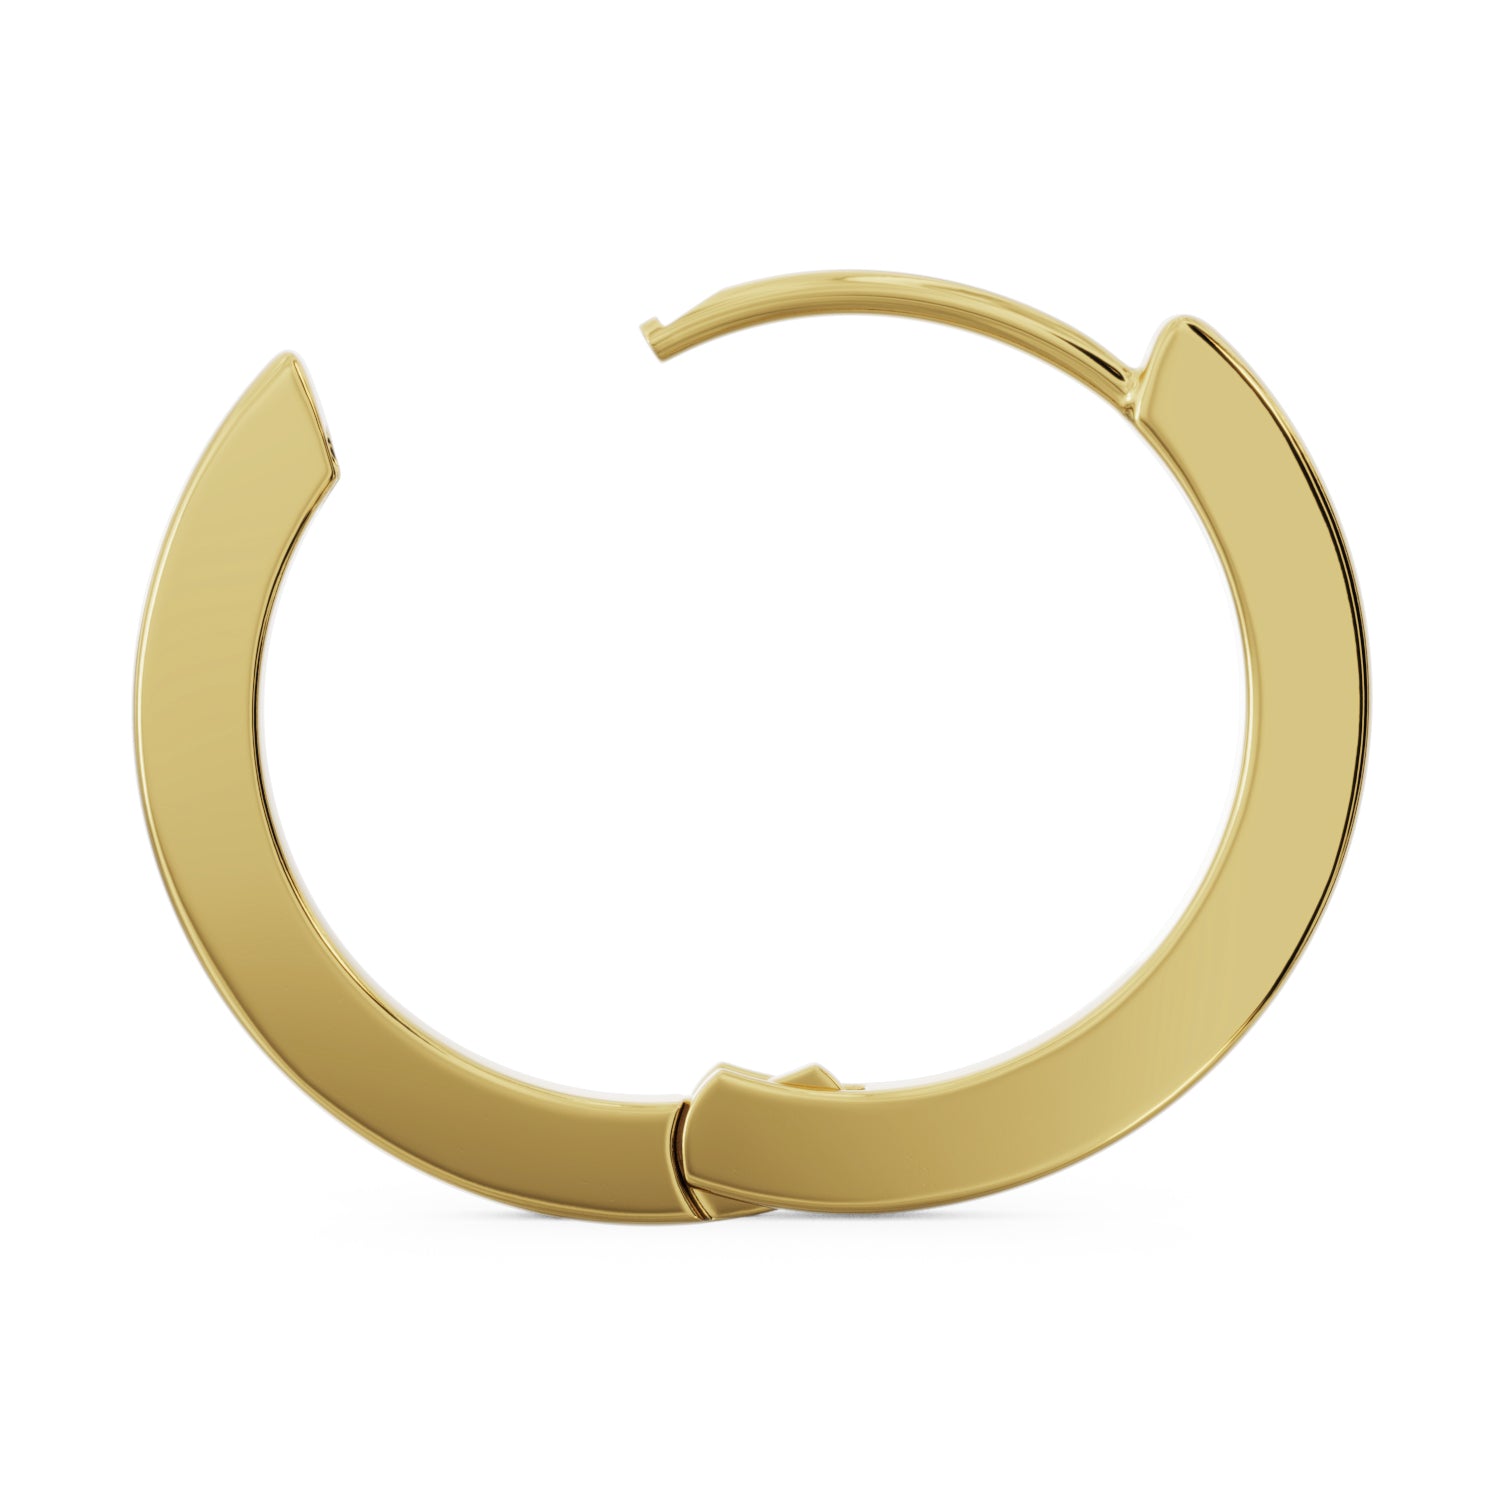 20mm Solid Gold Huggie Hoop Earrings